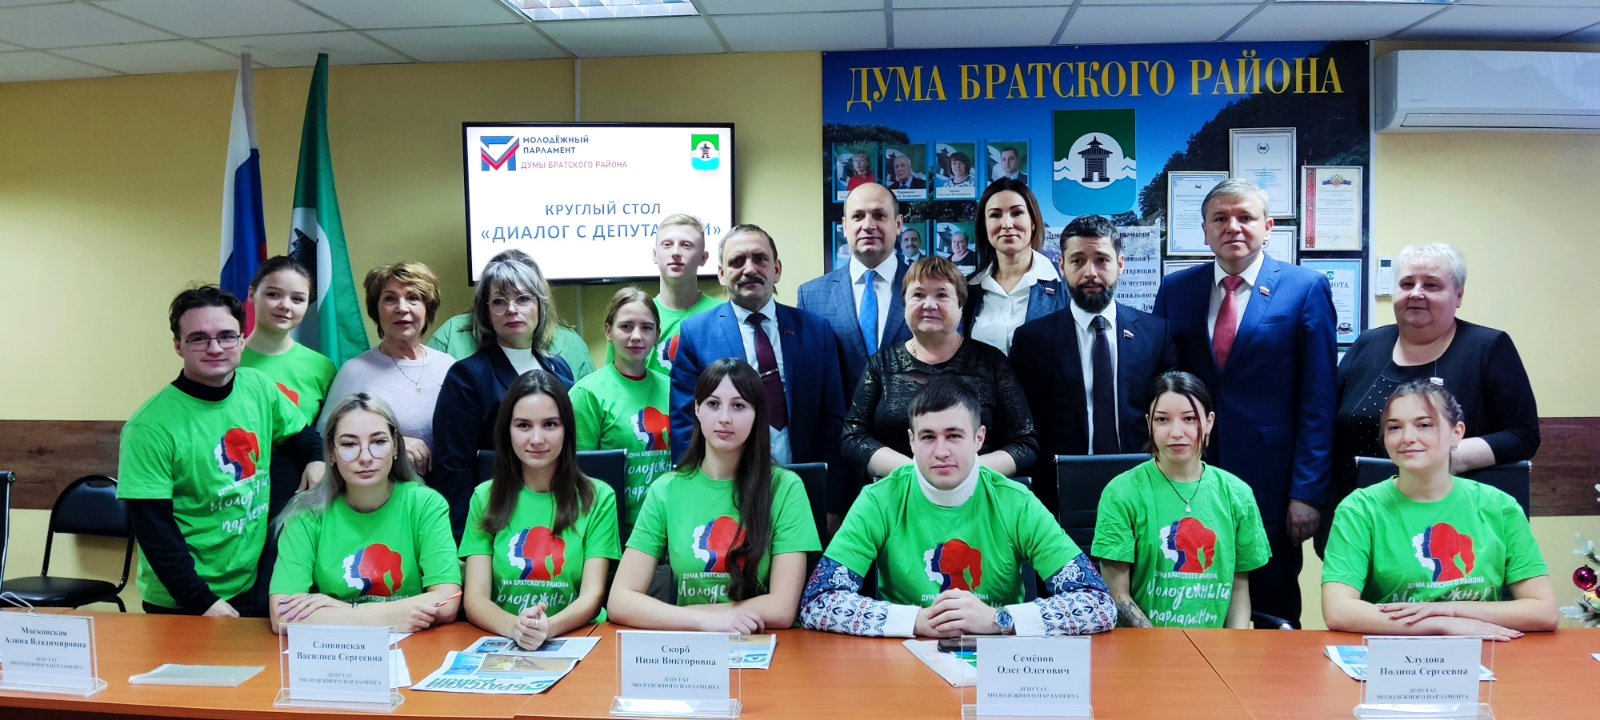 В Думе Братского района состоялся круглый стол "Диалог с депутатами"